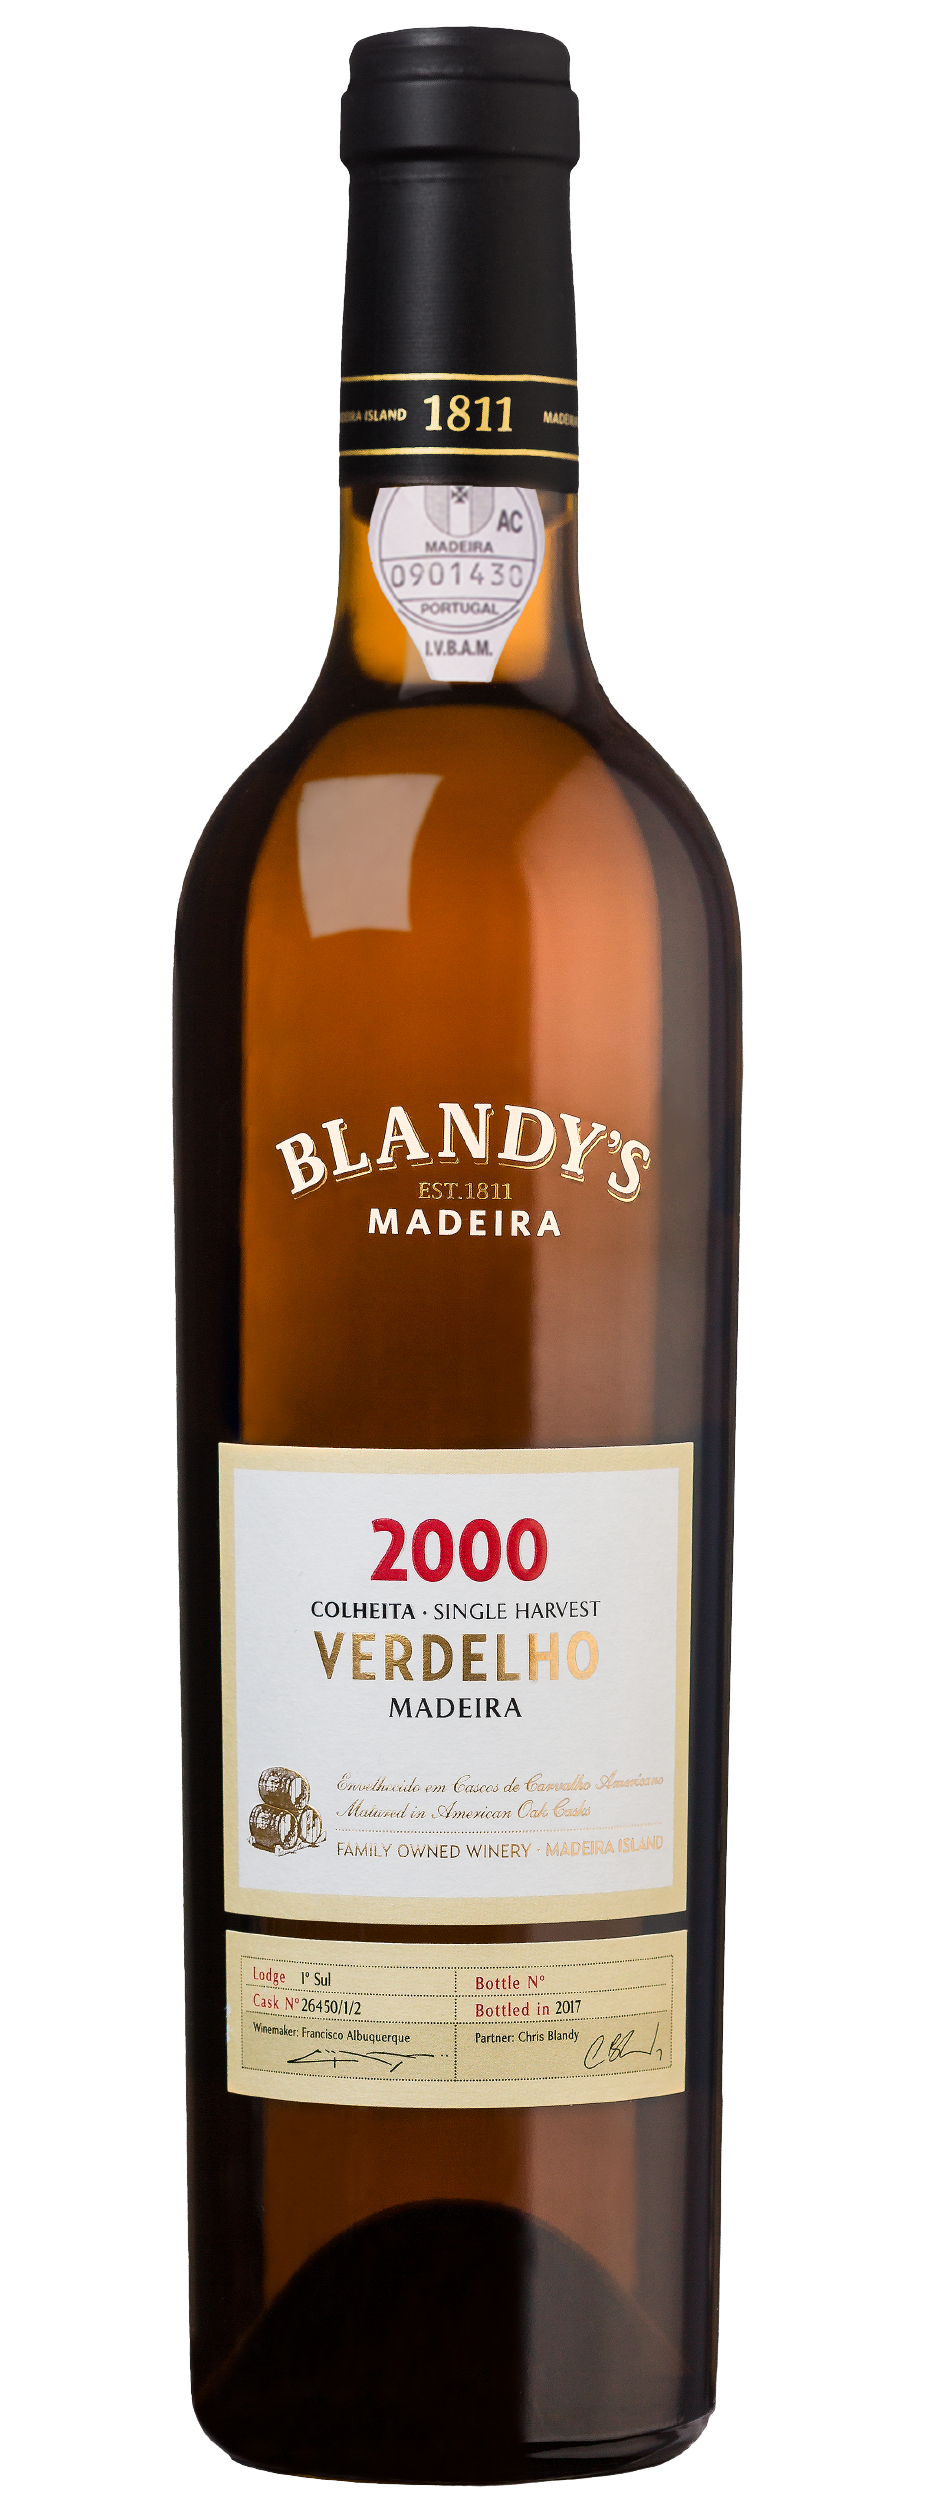 Product Image for BLANDY'S VERDELHO COLHEITA 2000